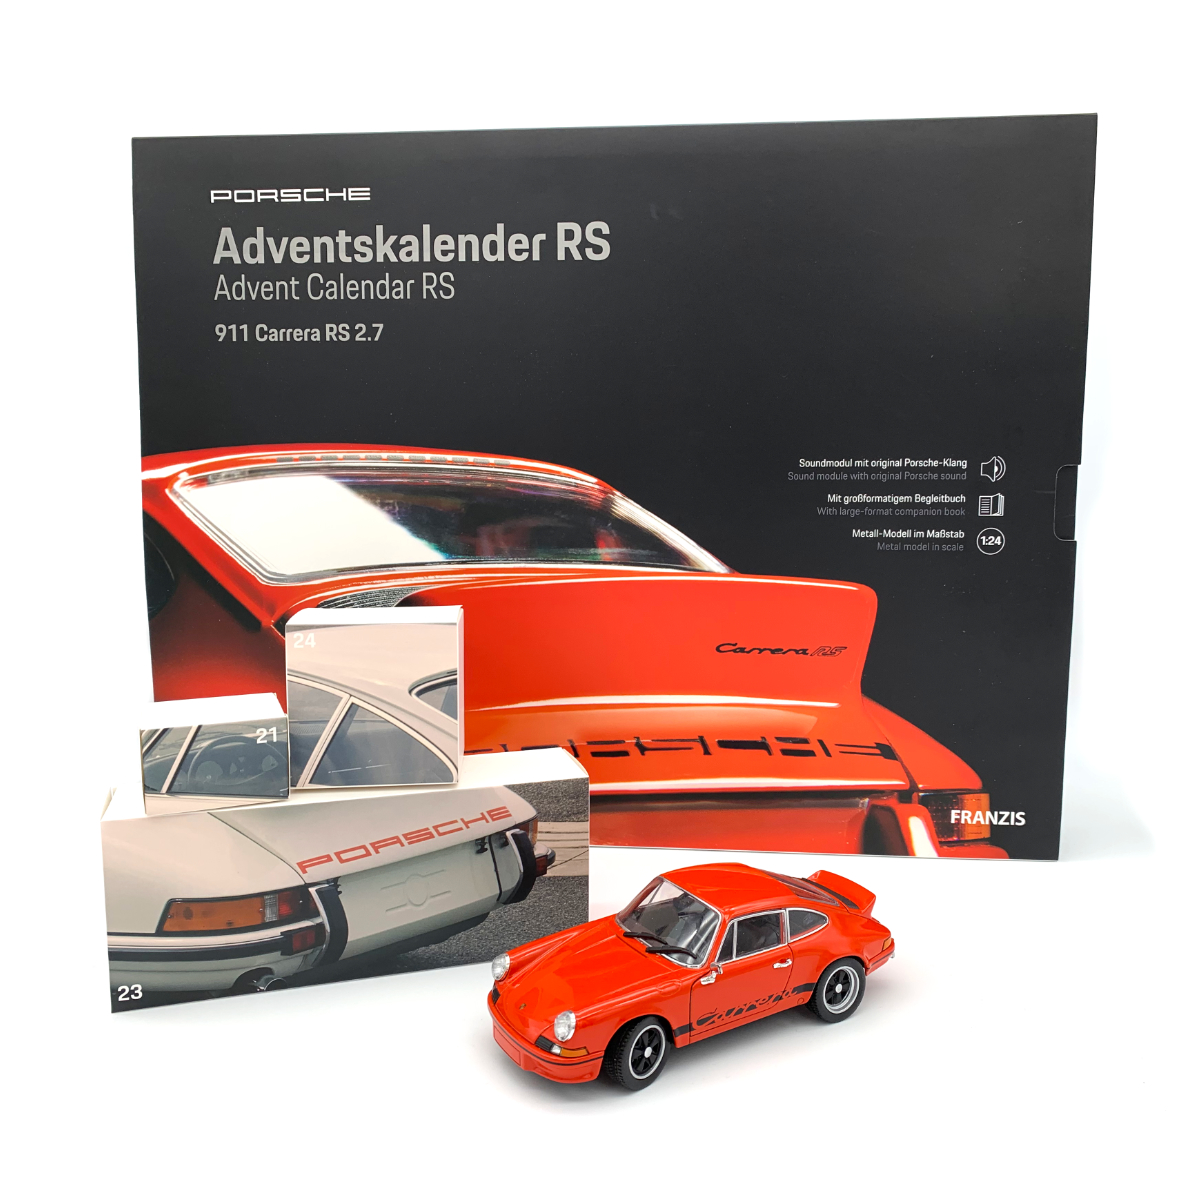 New Advent Calendar Porsche 911 2020 From 14 Years Franzis Verlag 